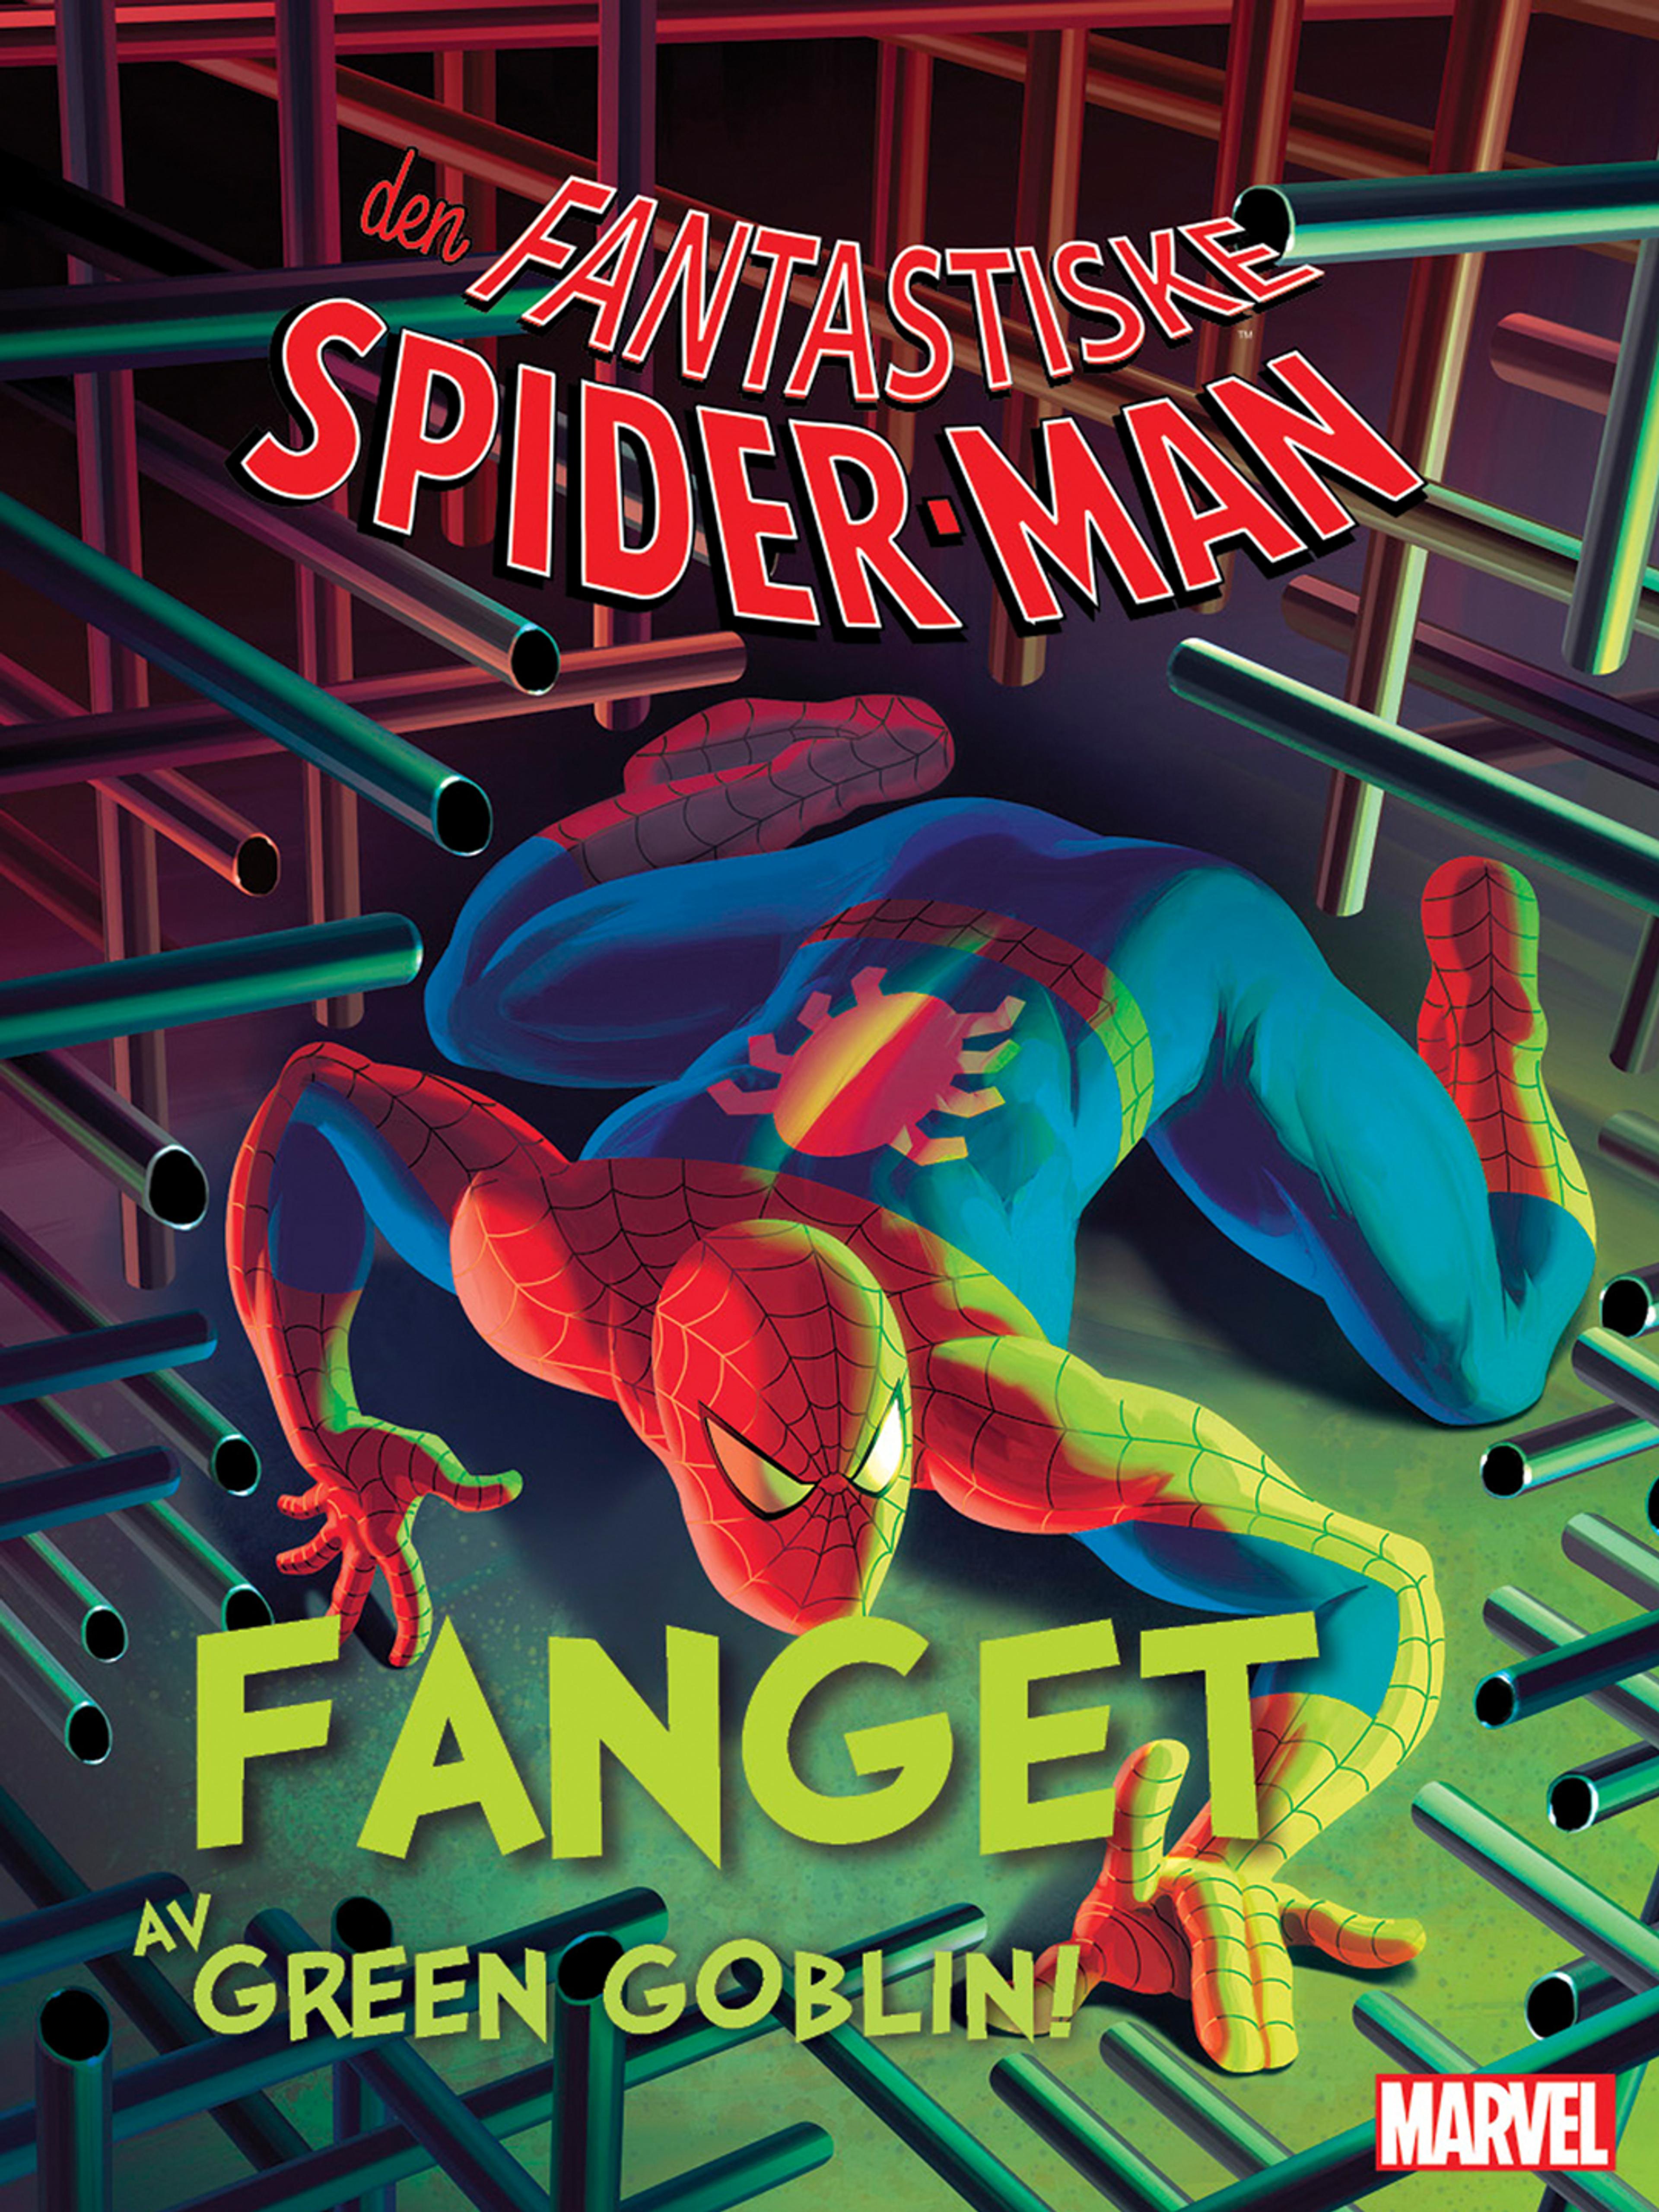 Den fantastiske Spider-Man: Fanget av Green Goblin!